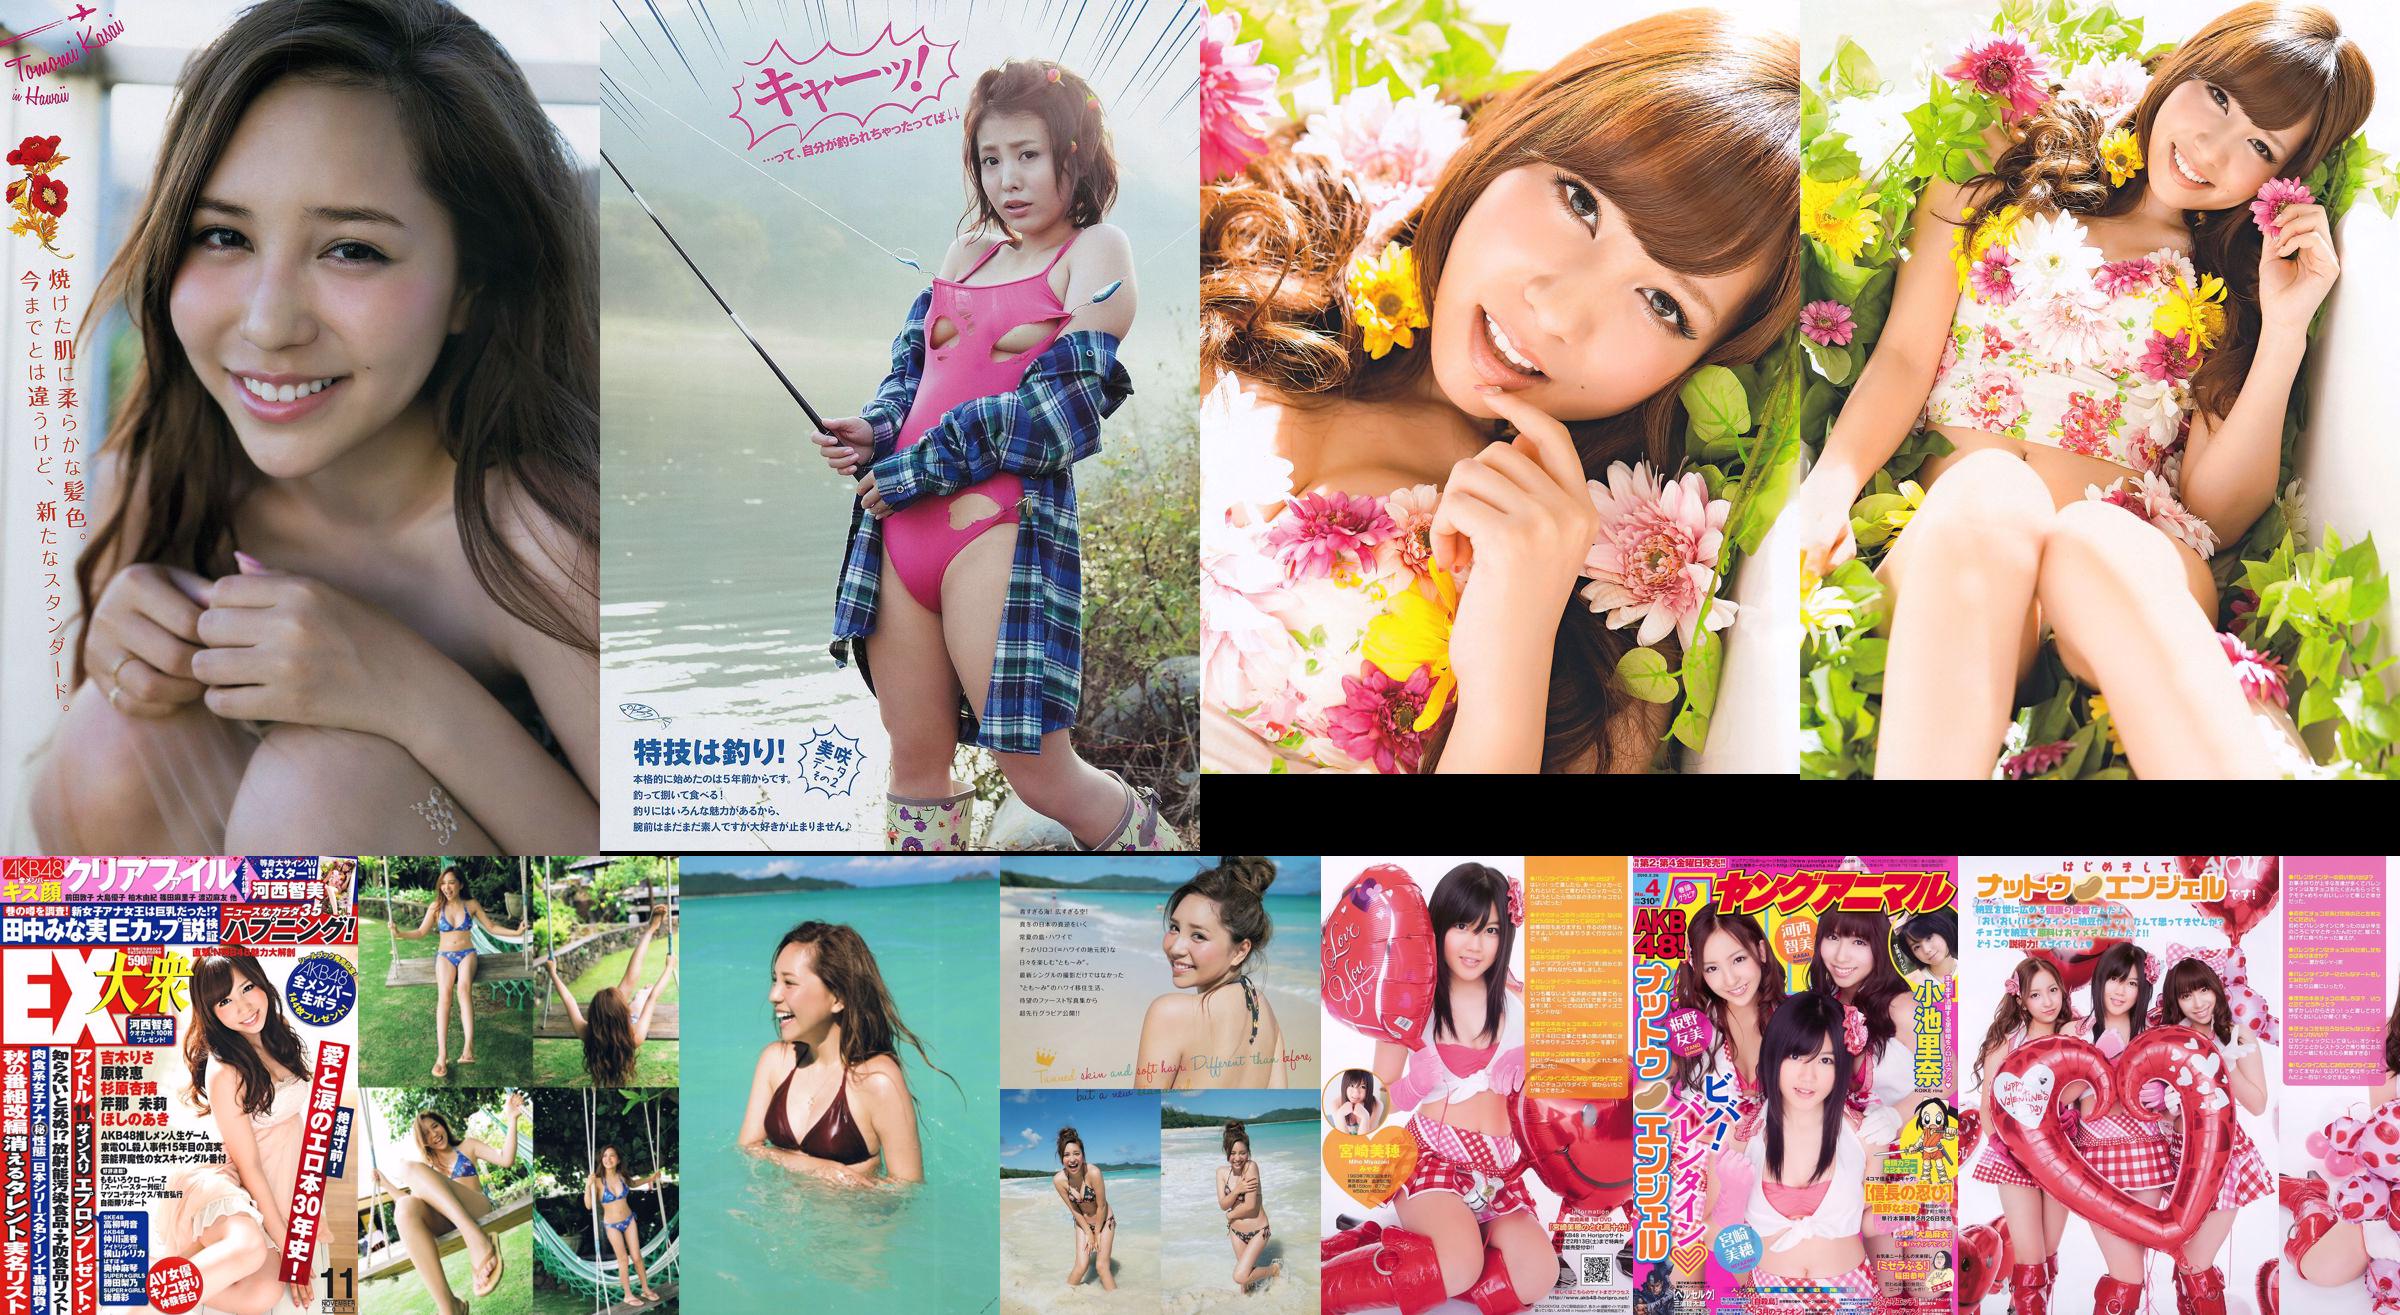 [EX Taishu] Tomomi Kasai Risa Yoshiki Mikie Hara NMB48 Anri Sugihara Aki Hoshino Serina 2011 No.11 Ảnh No.760417 Trang 2